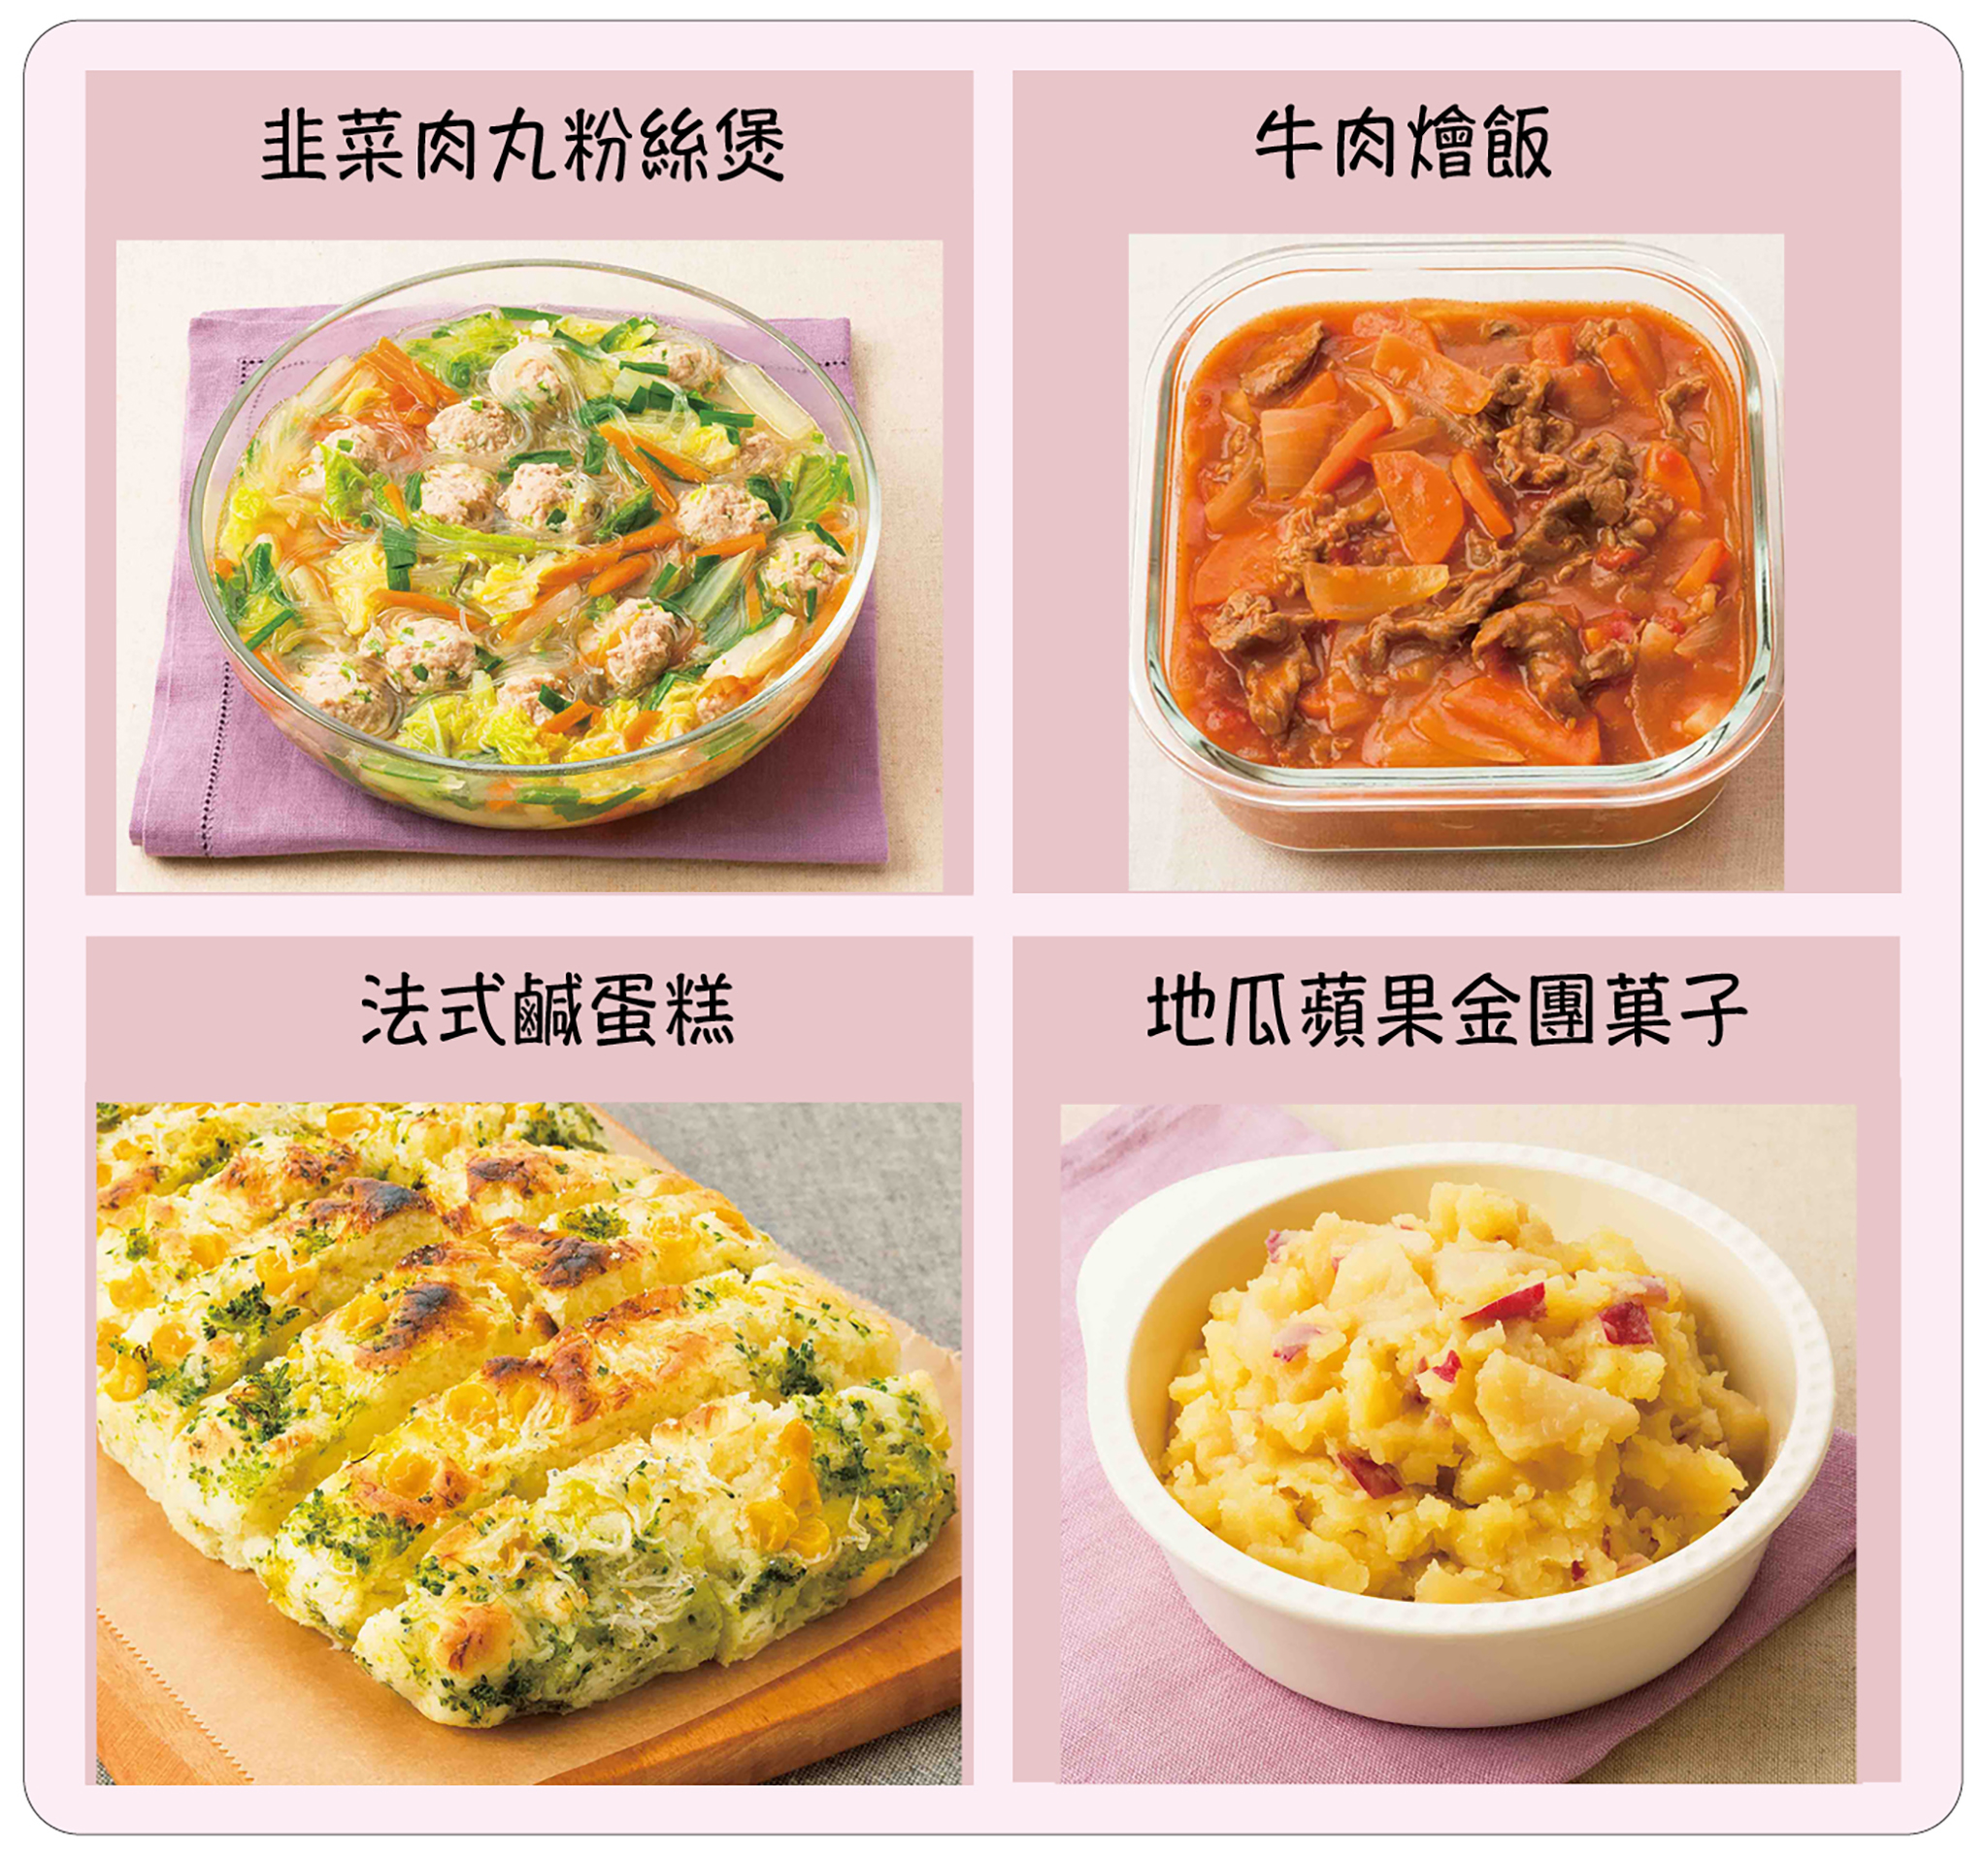 中村美穗推薦適合大人與孩童的常備料理：韭菜肉丸粉絲煲、牛肉燴飯、法式鹹蛋糕、地瓜蘋果金團菓子。